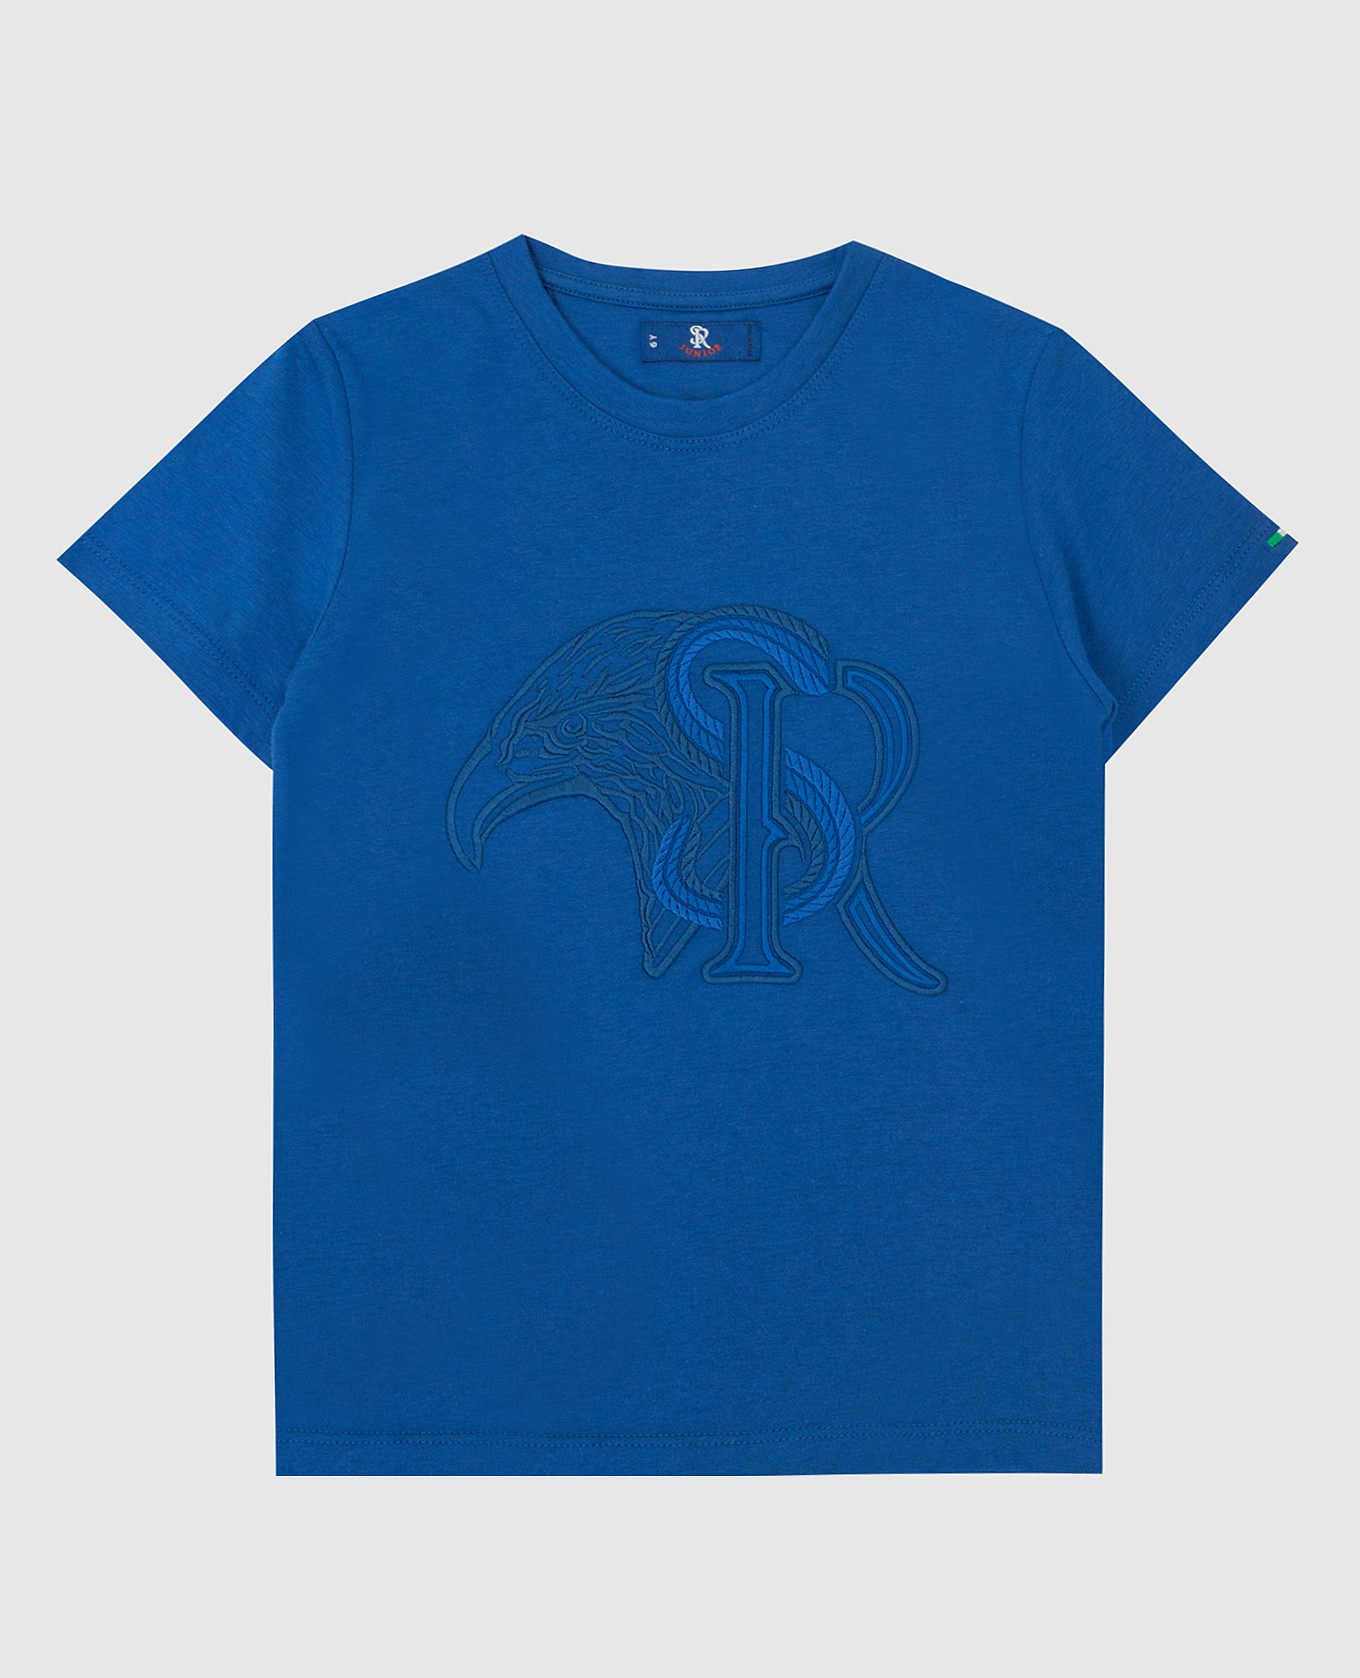 Детская синяя футболка с вышивкой эмблемы